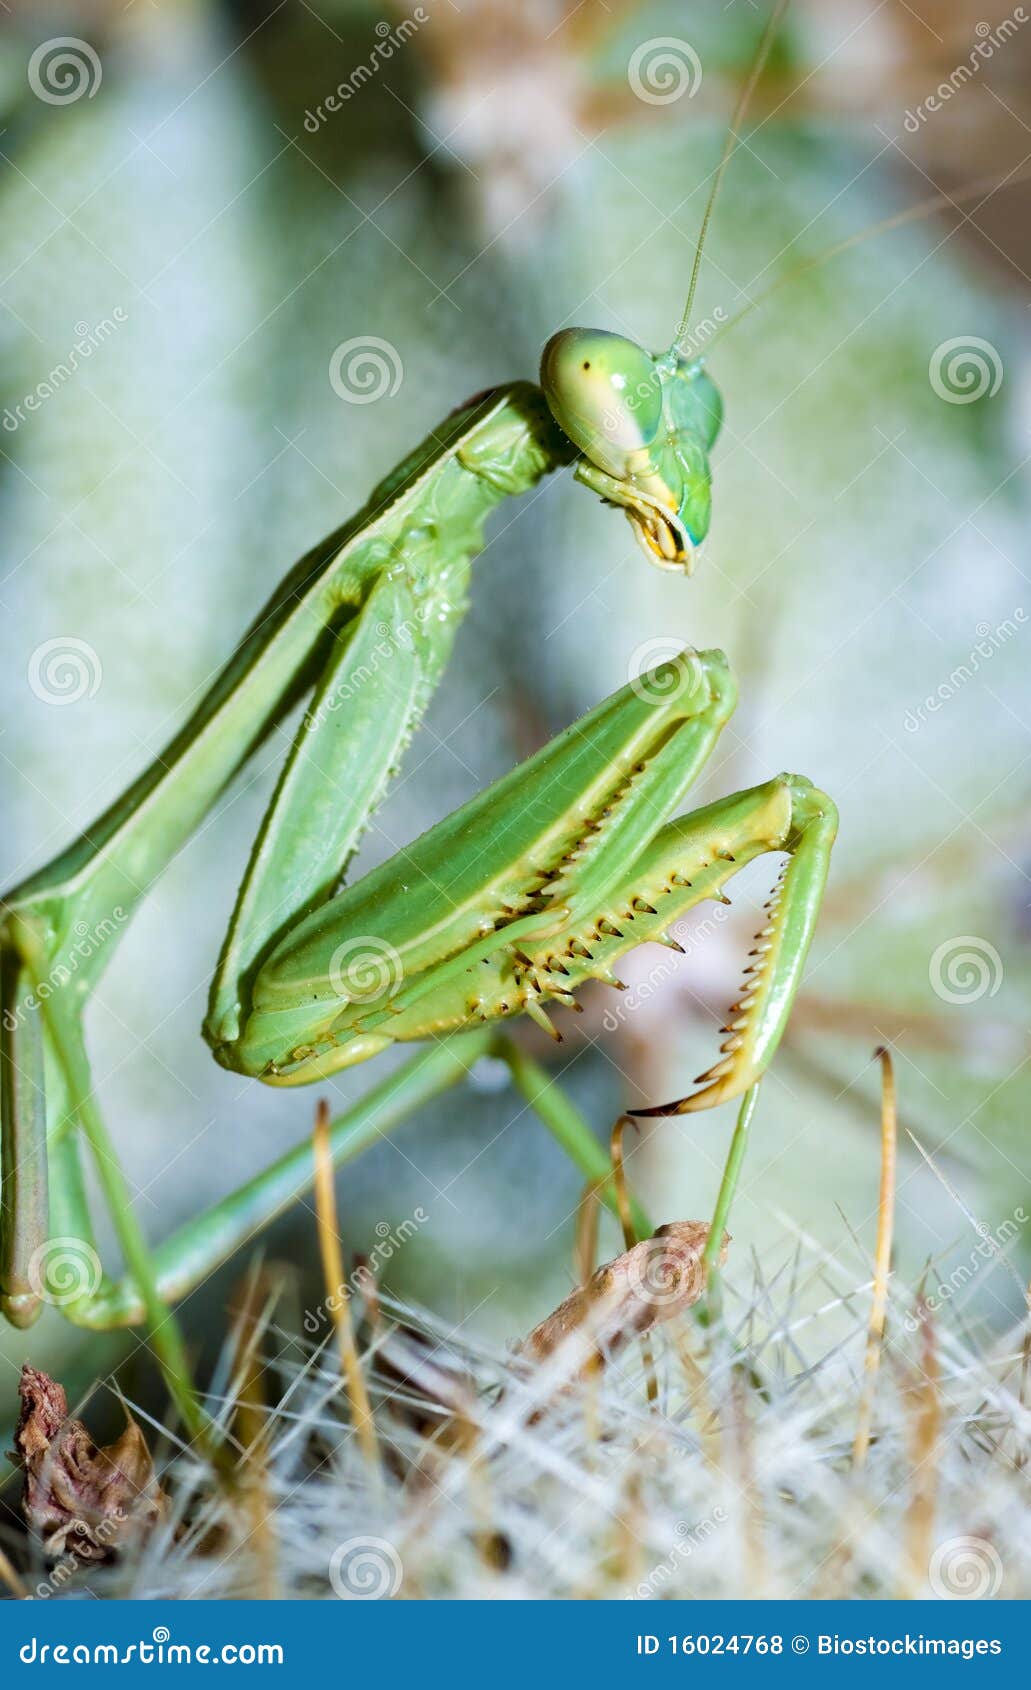 praying mantis, mantis religiosa